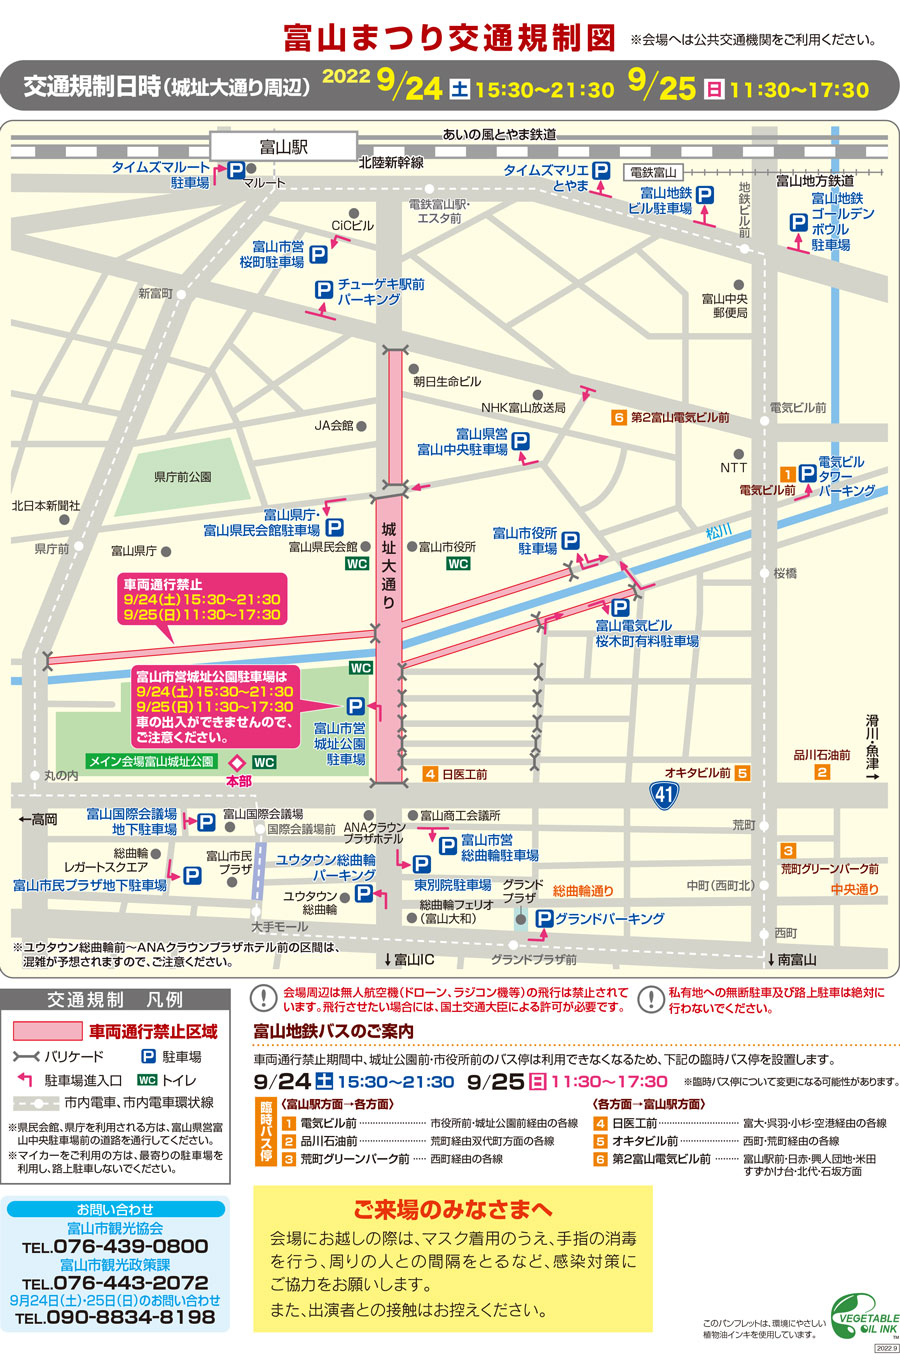 「第62回 富山まつり2022」の交通規制マップ